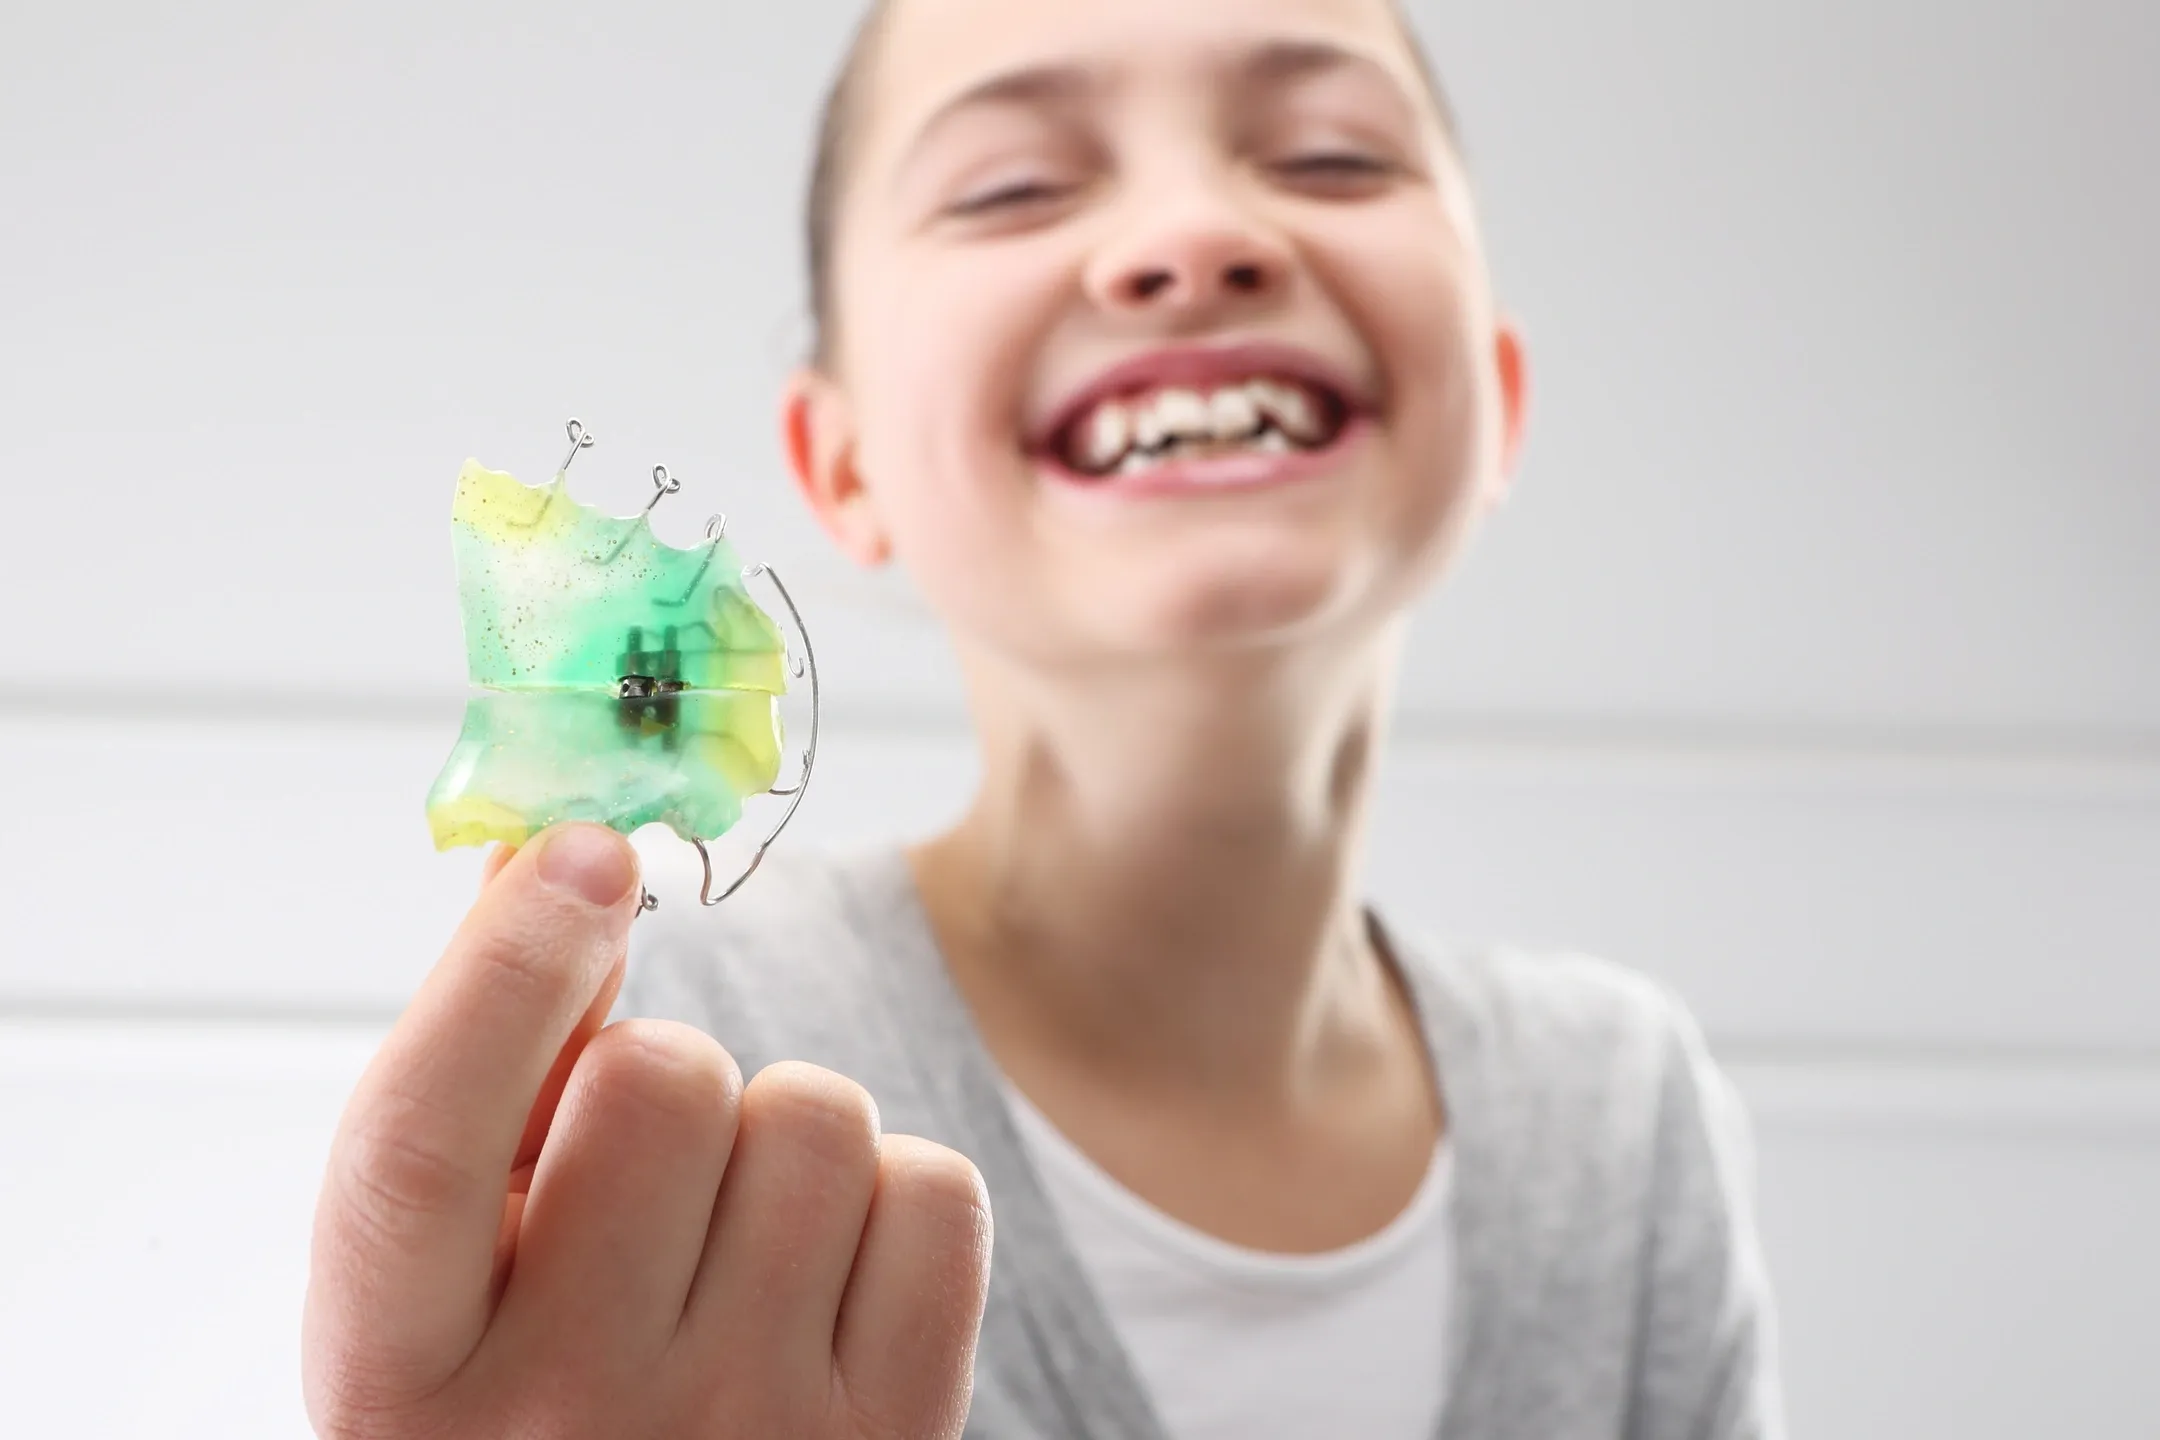 ما هي تكلفة تقويم الأسنان المتحرك للاطفال ؟